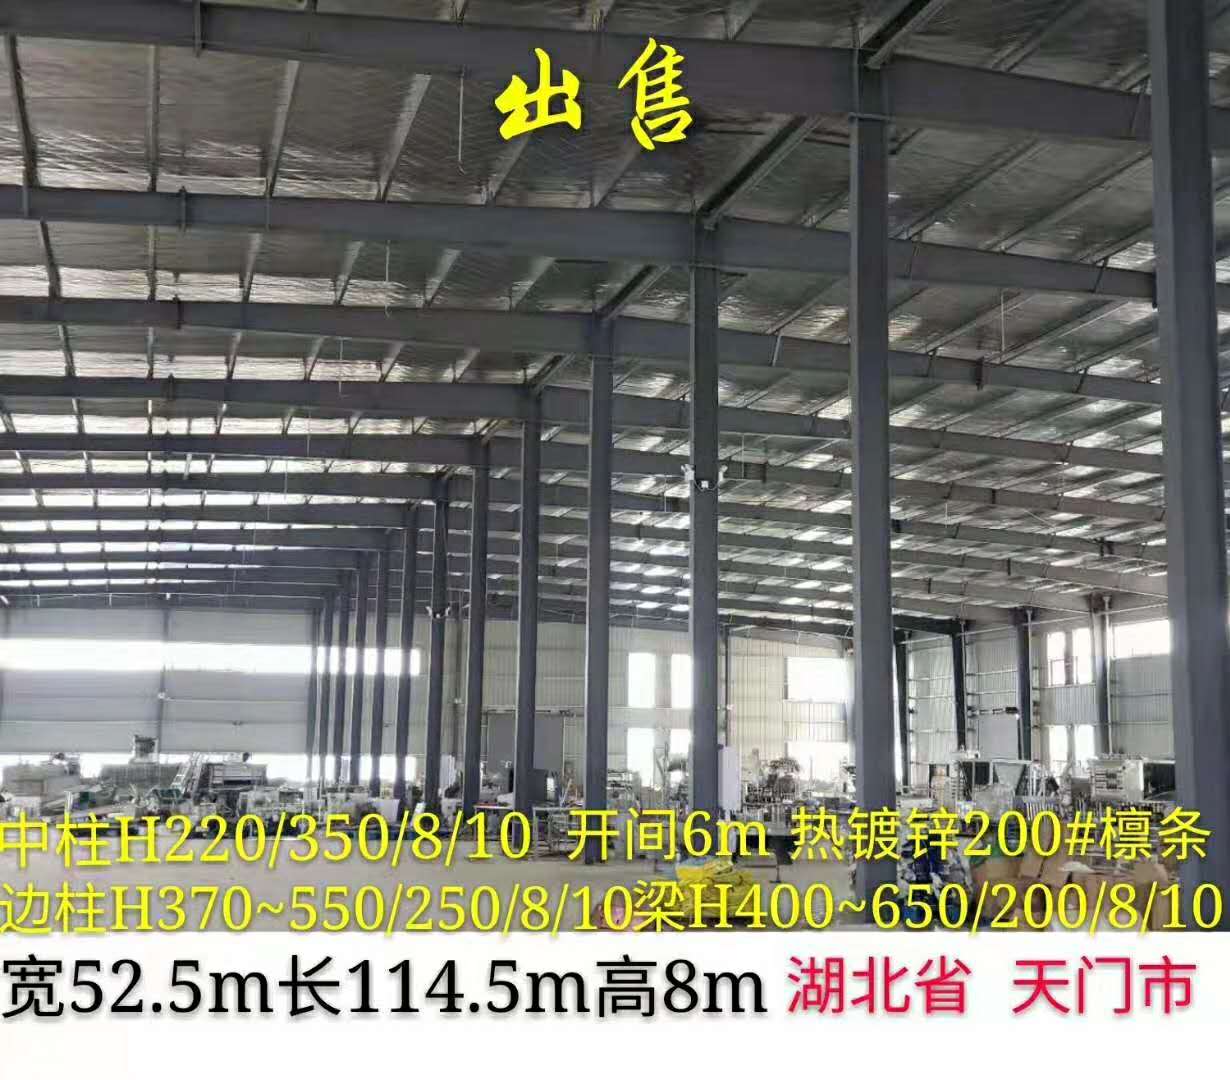 湖北省天门市宽52.5m长114.5m高8m厂房